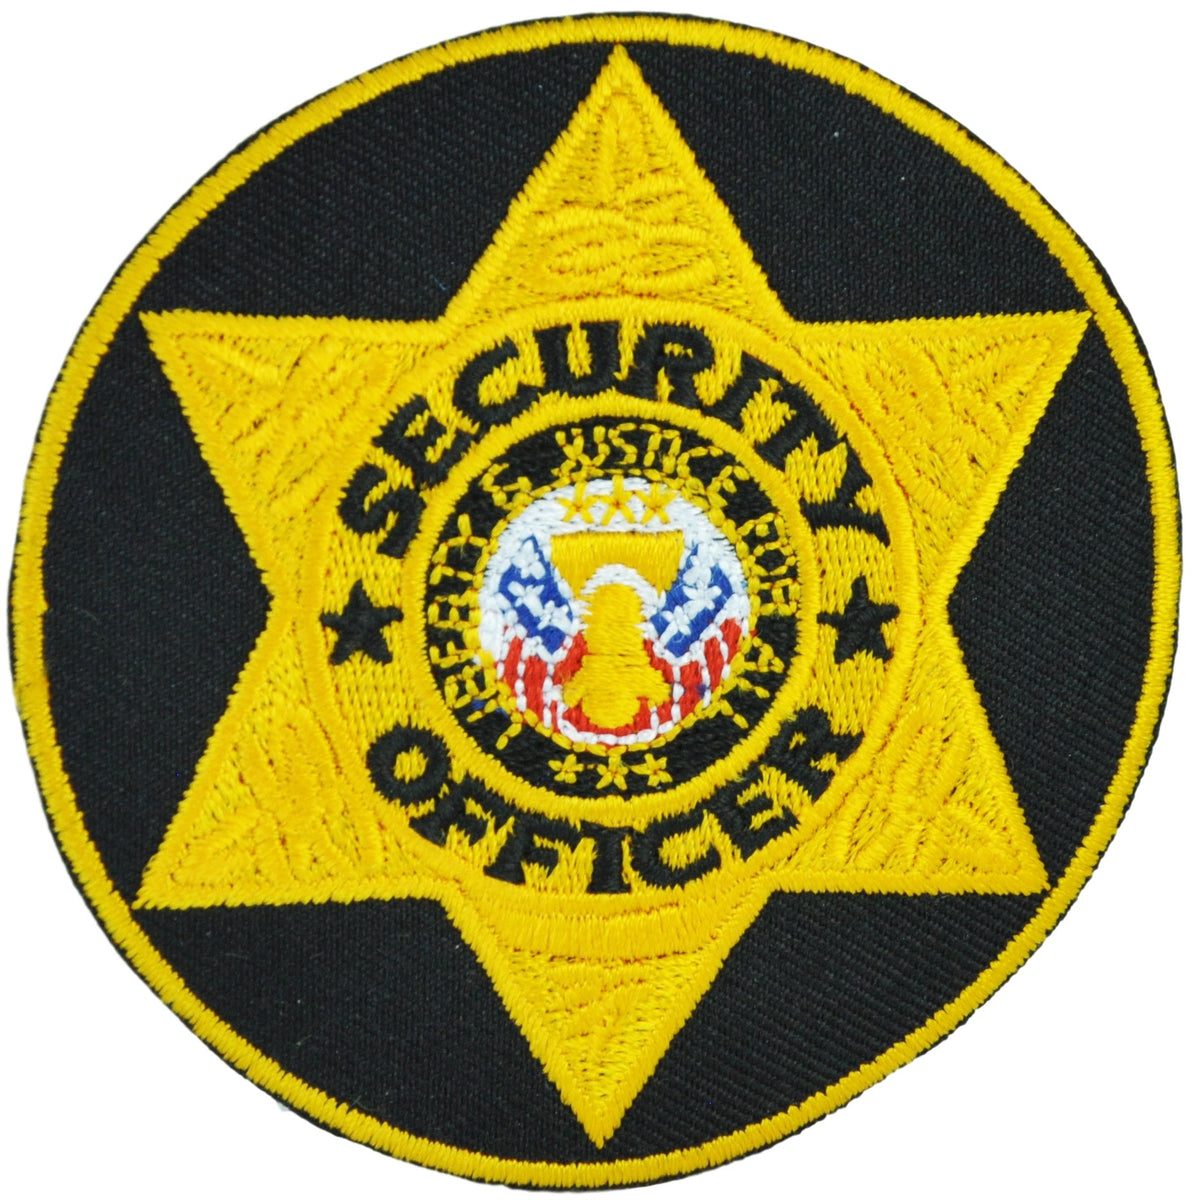 SECURITY OFFICER Badge Patch, Gold/Black, 3 Circle - Emblem Enterprises